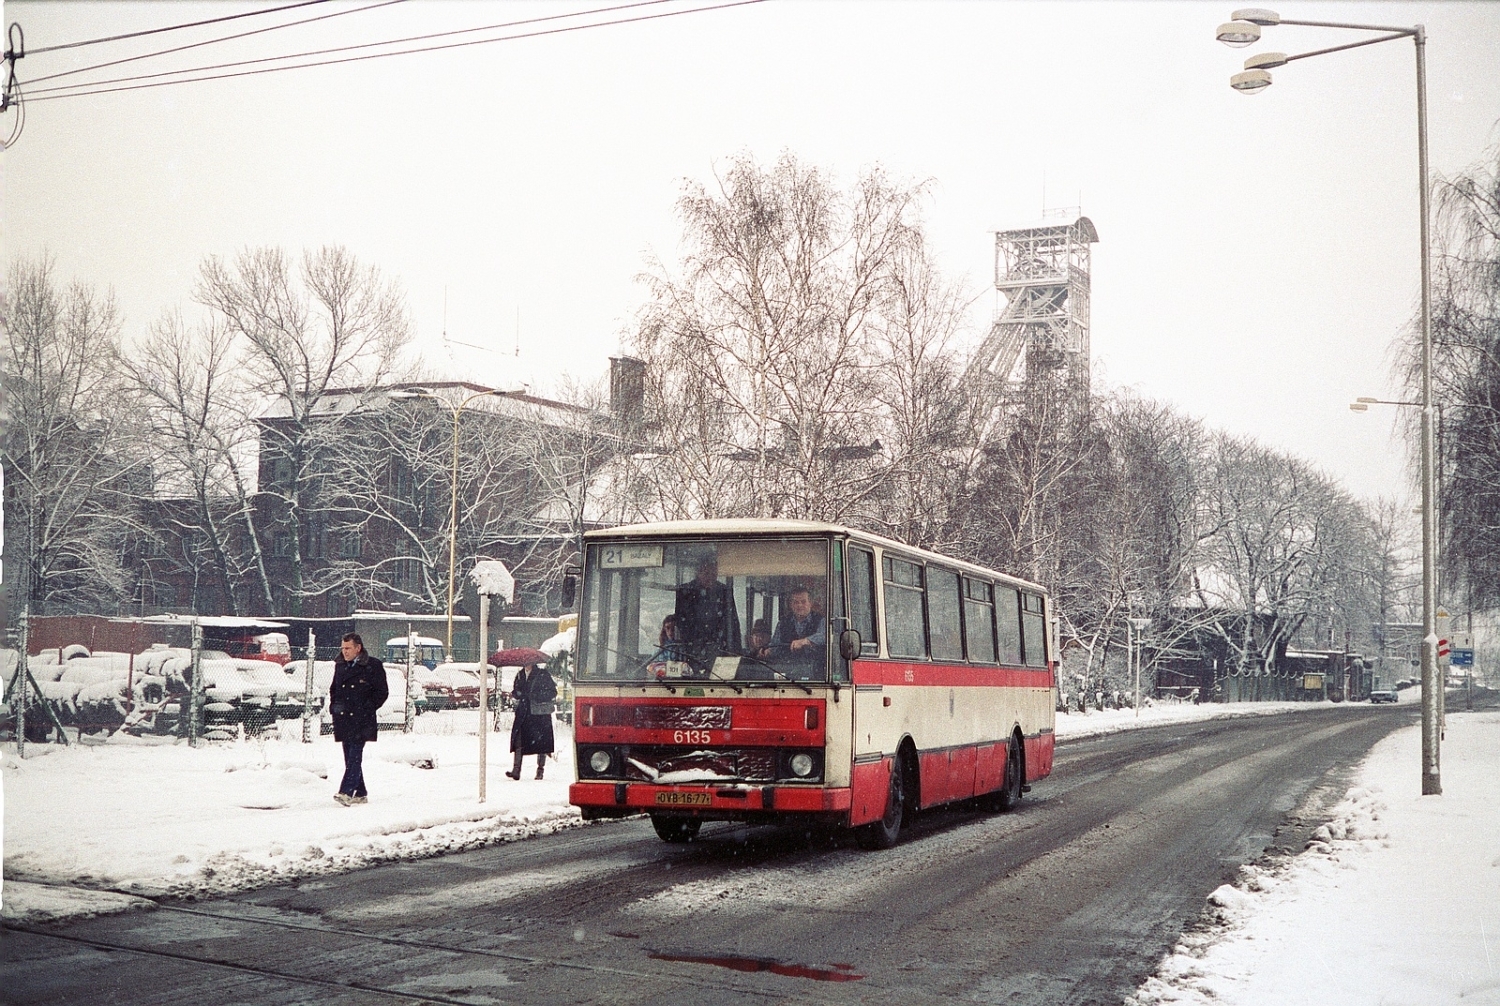 Dne 27. 12. 1993 zachytil fotograf autobus Karosa B 731 ev. č. 6135 z roku 1985 u dolu Zárubek, jehož areál jde vidět v pozadí. Důl byl uzavřen po požáru v dubnu 1990, ikonická těžní věž byla odstraněna v roce 1998. Autobus na snímku byl již v roce 1994 vyřazen. (foto: Ing. Robert Janků)